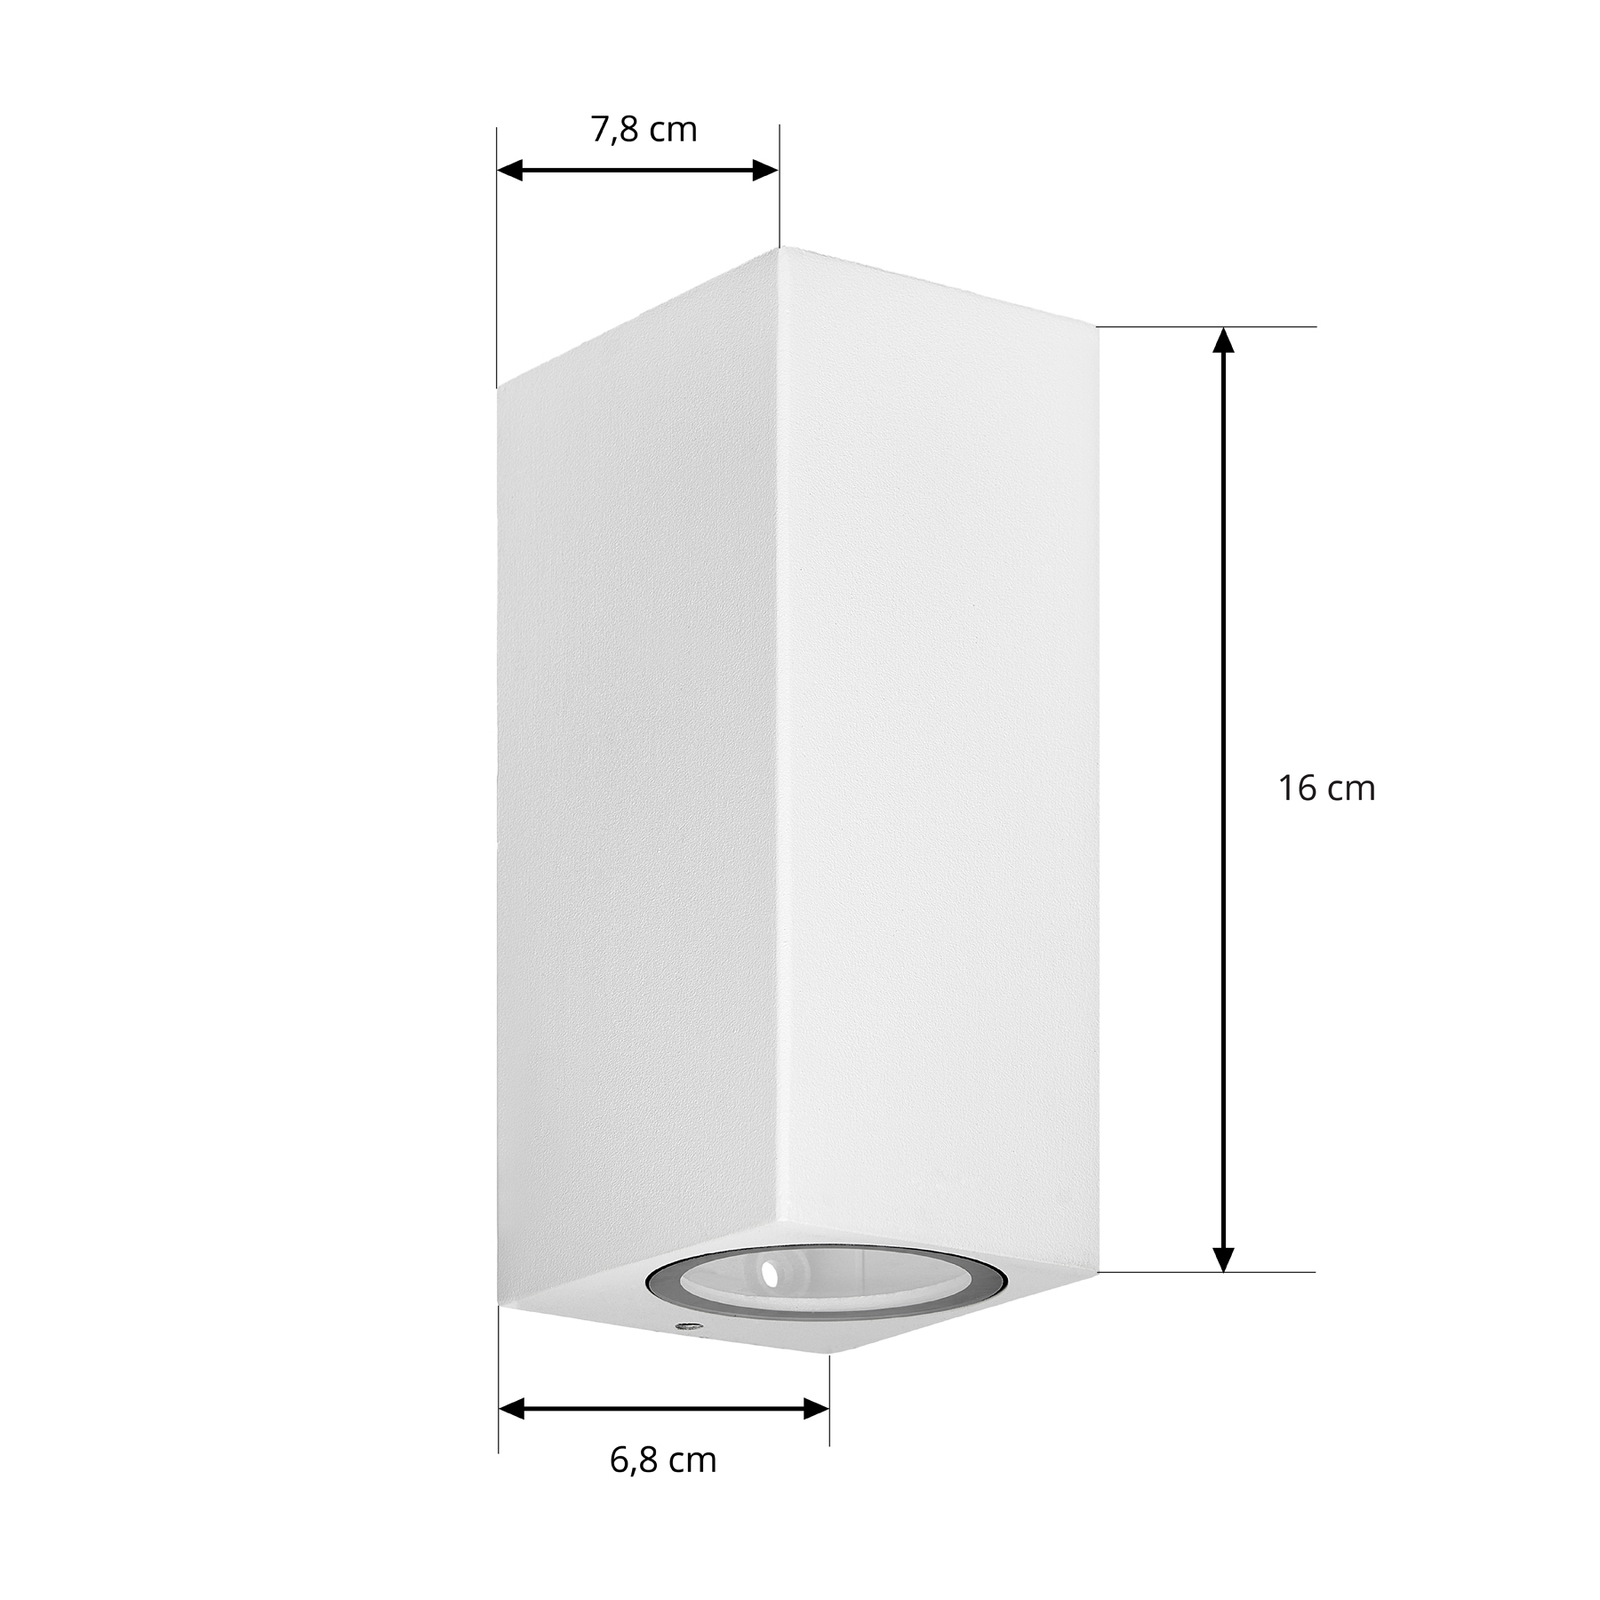 Prios vanjska zidna svjetiljka Tetje, bijela, kvadratna, 16 cm